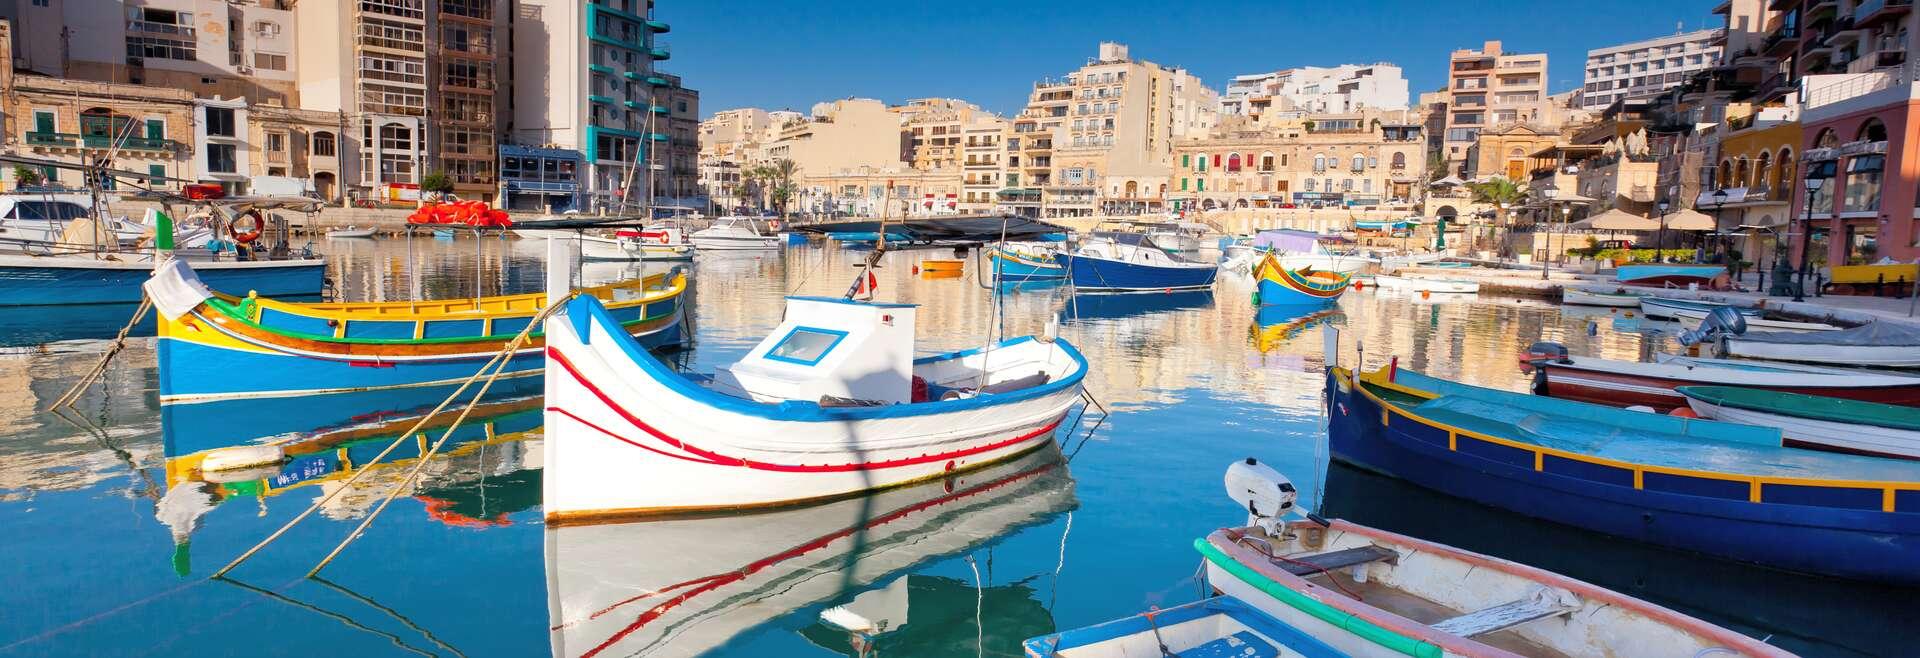 Séjour linguistique Malte, Sliema - port